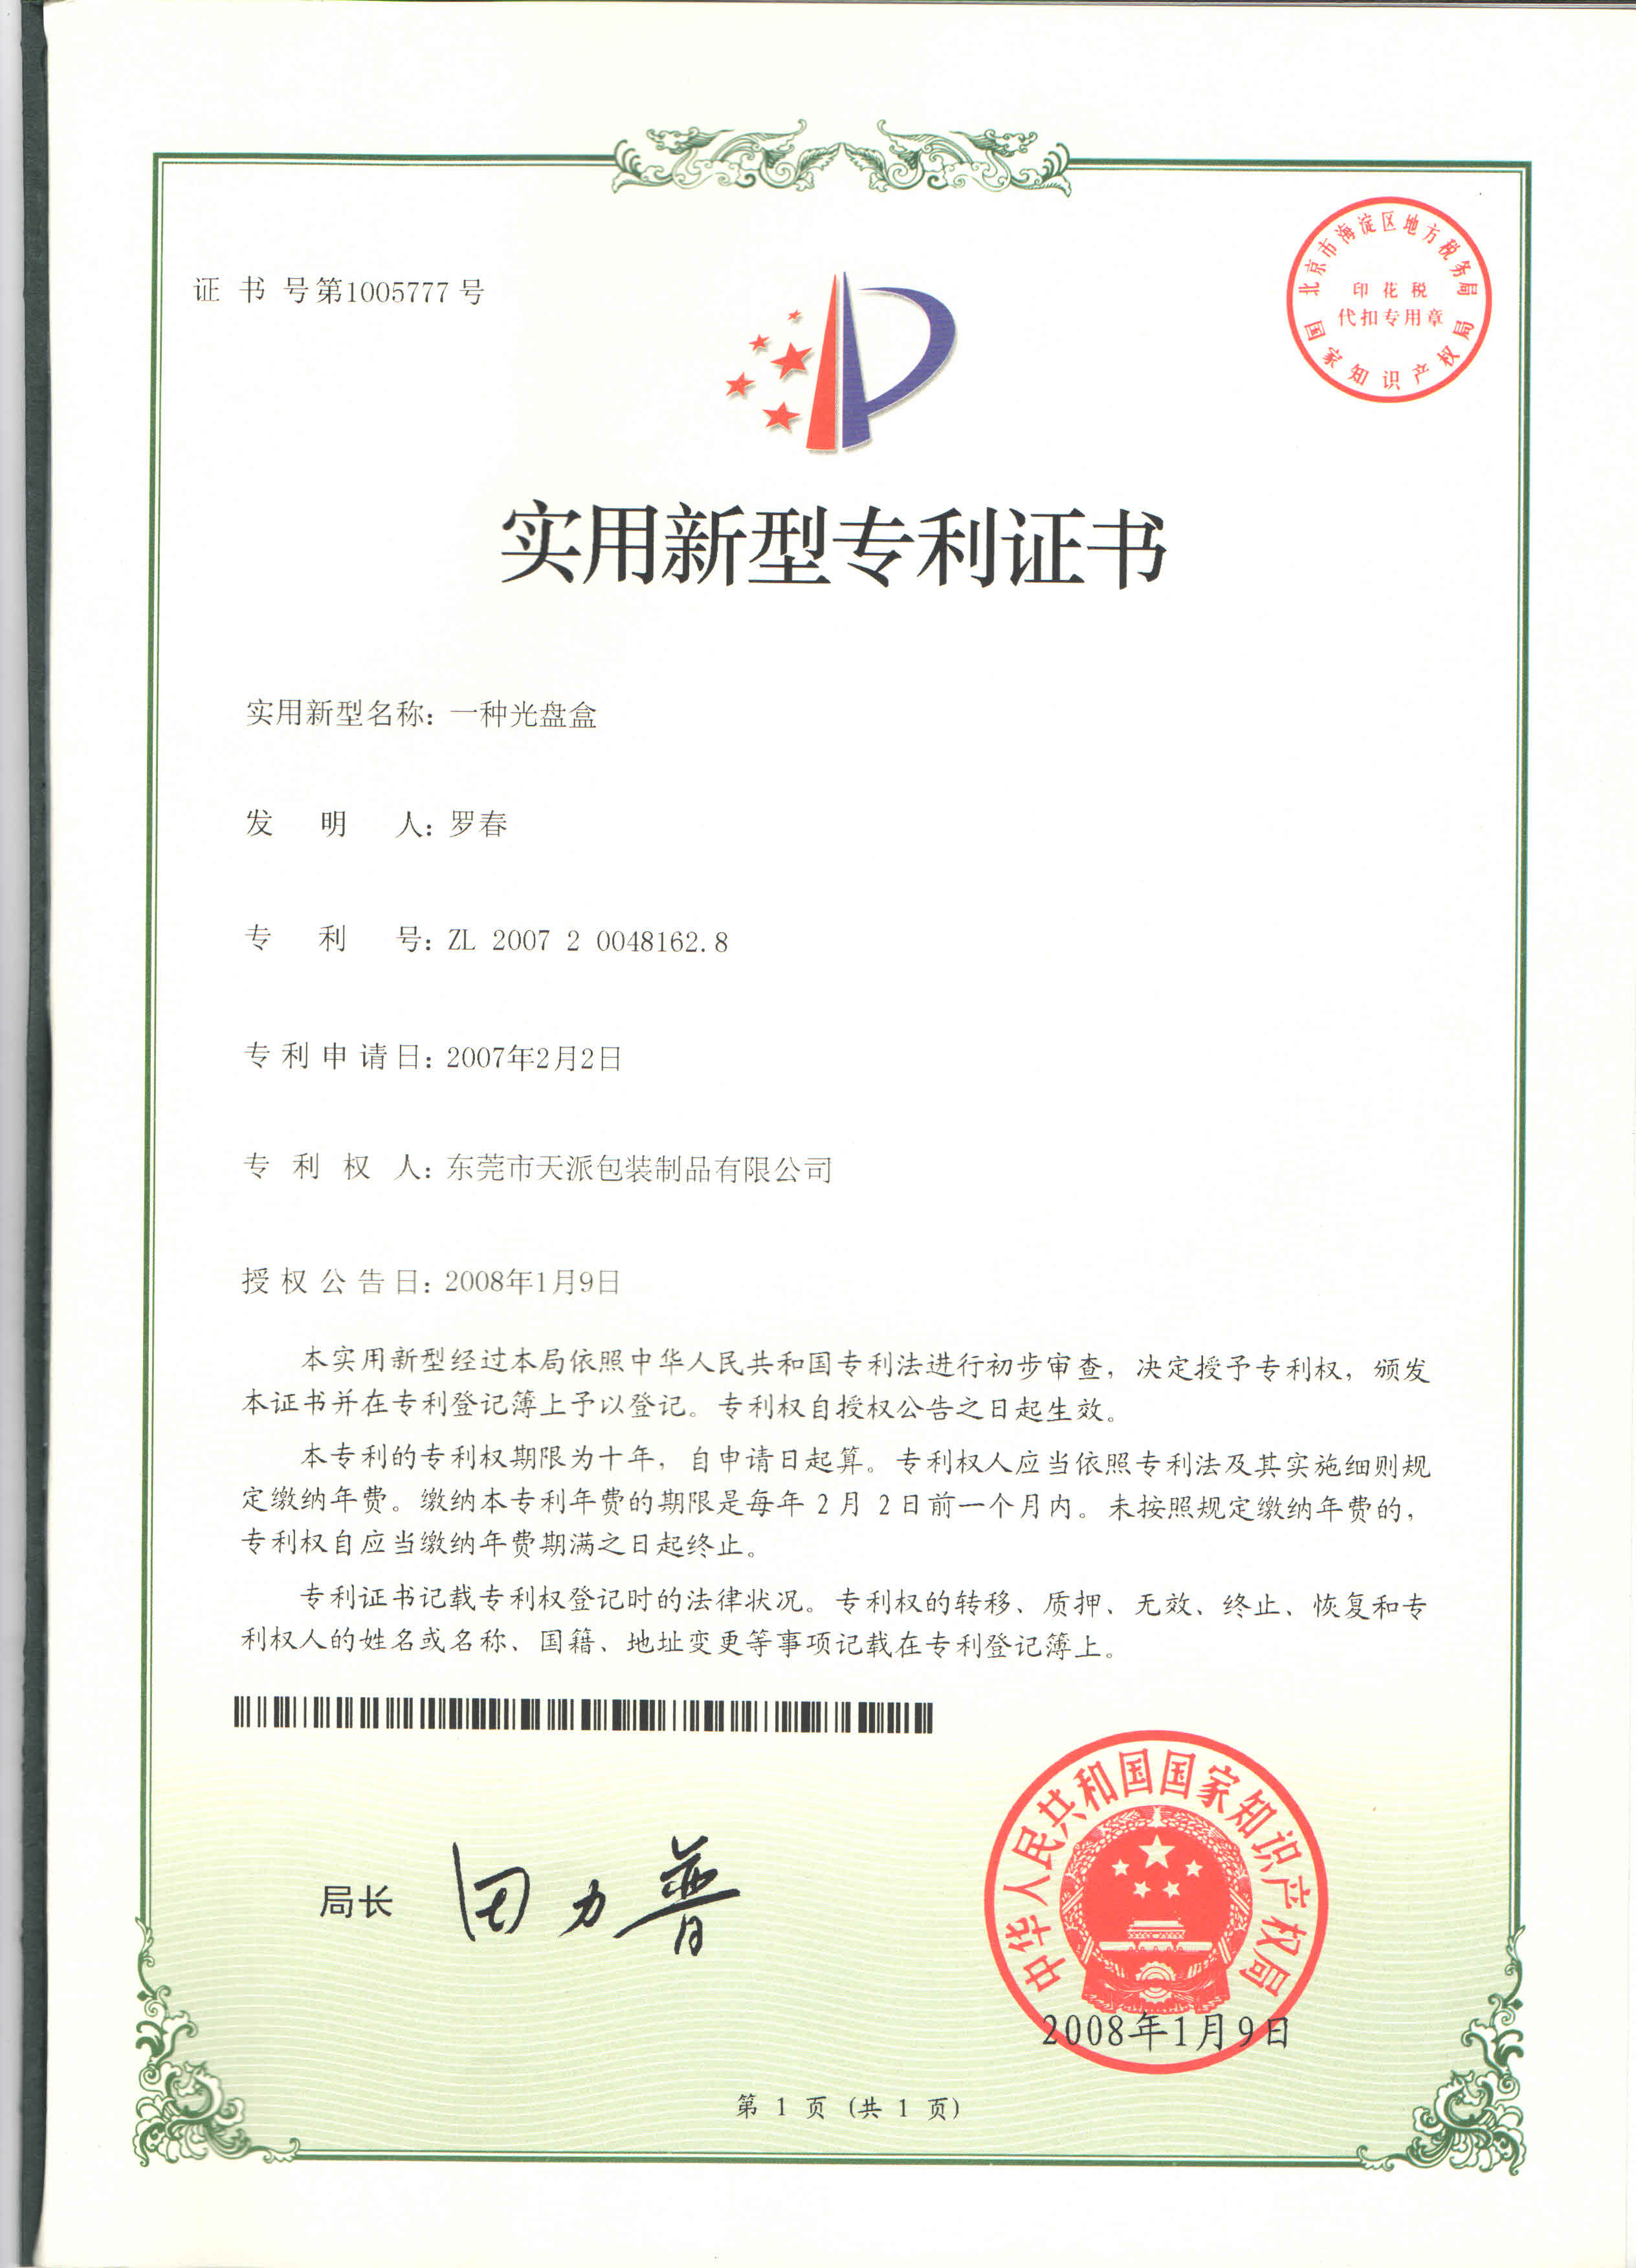 天麻铁盒工厂知识产权认证